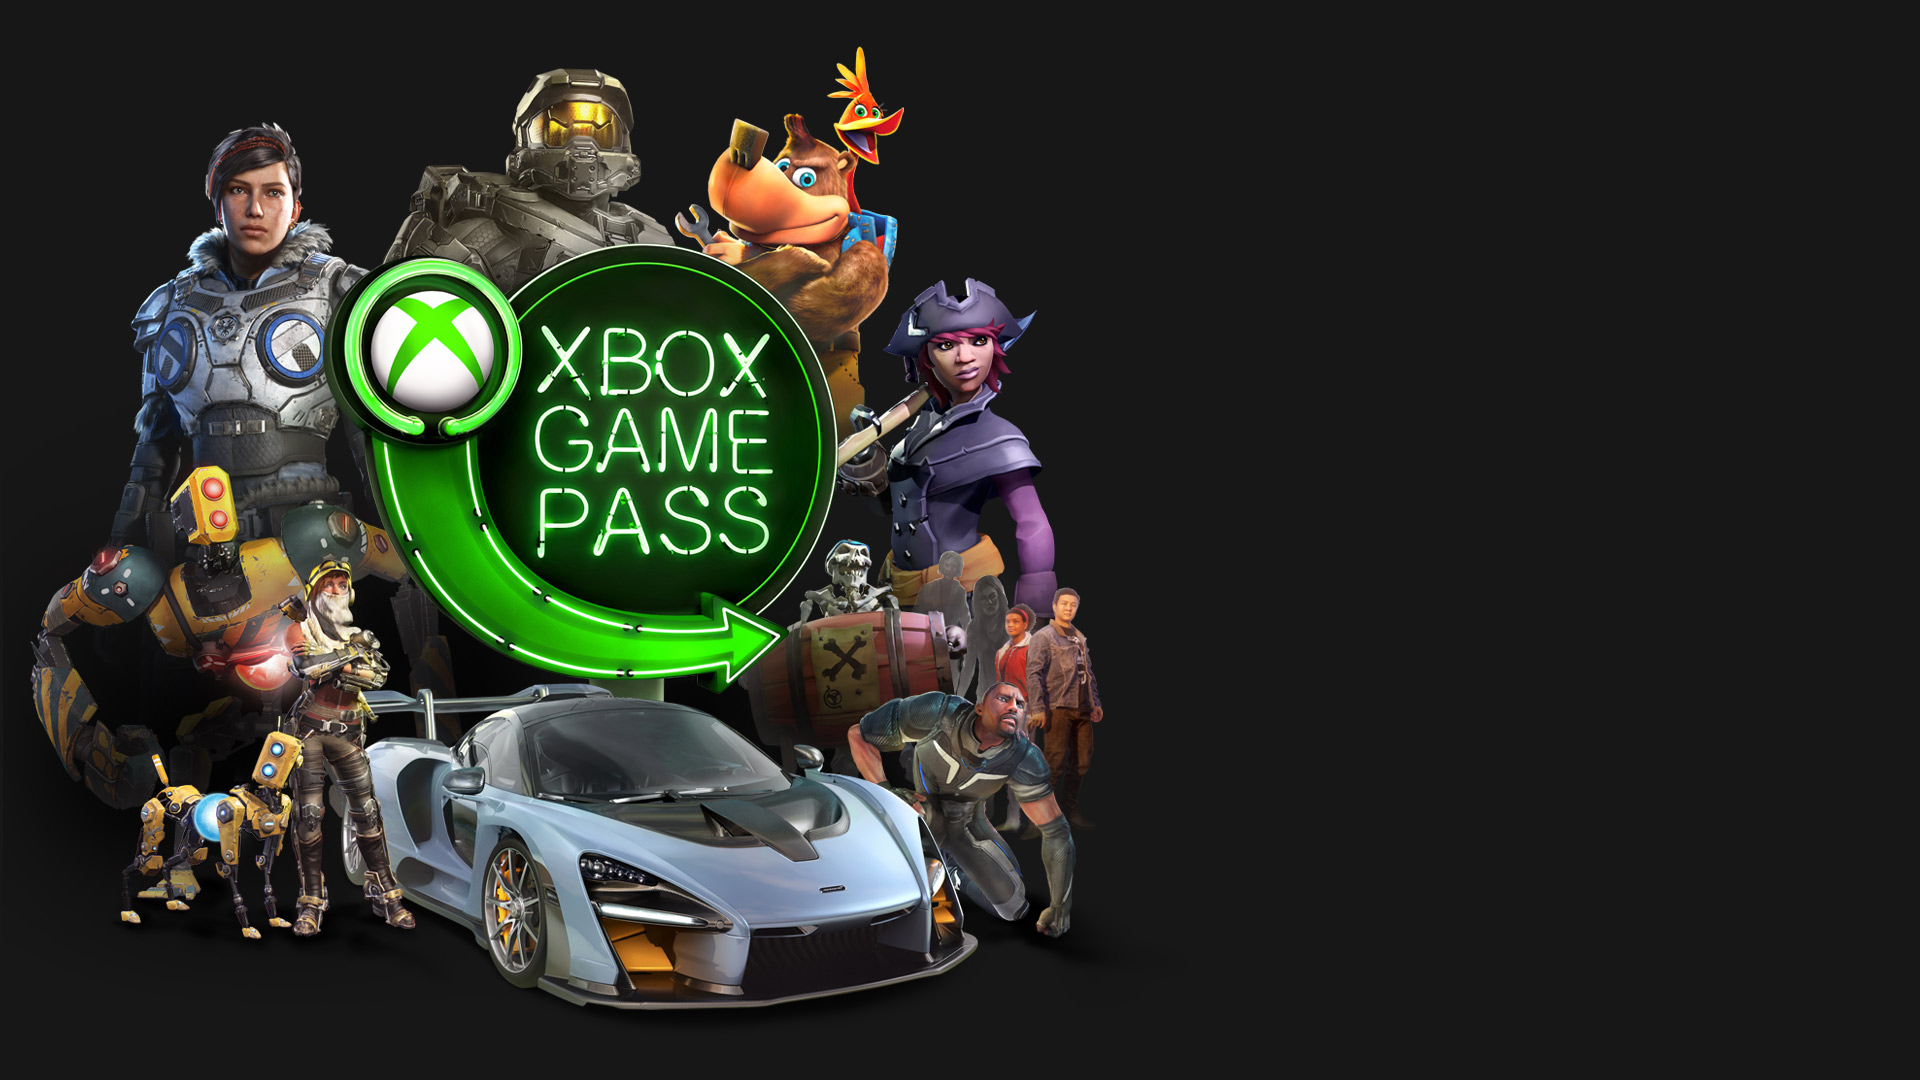 Xbox apk games. Xbox game Pass. Xbox game Pass logo. Игры гейм пасс на Икс бокс. Хбох гейм пасс ультимейт.